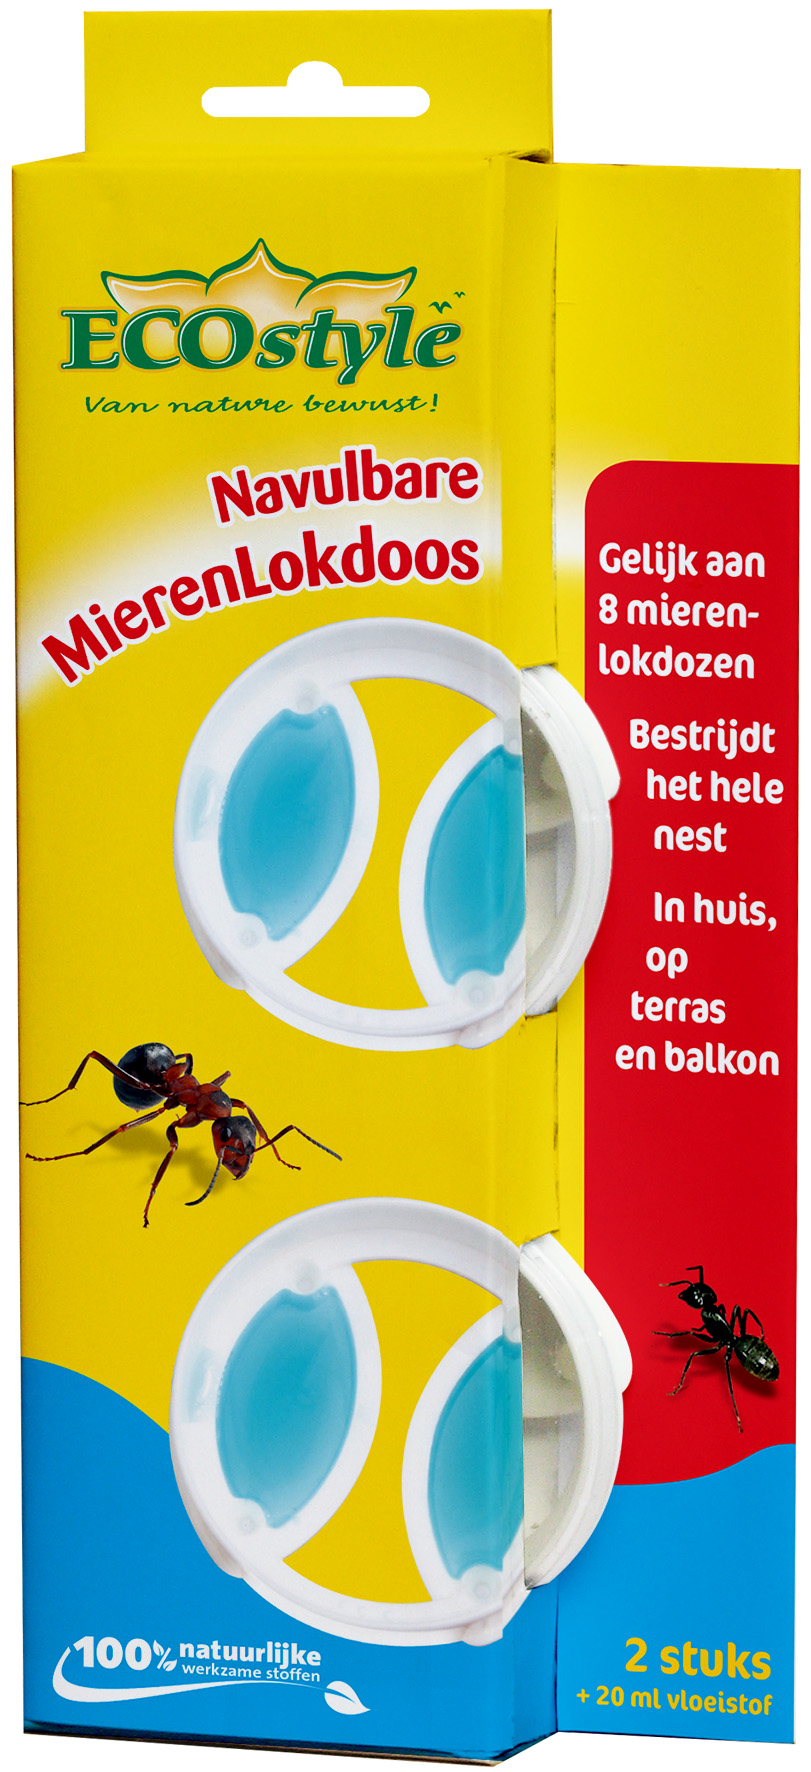 Afbeelding Ecostyle Navulbare Mierenlokdoos - Insectenbestrijding - 2 stuks door Haxo.nl